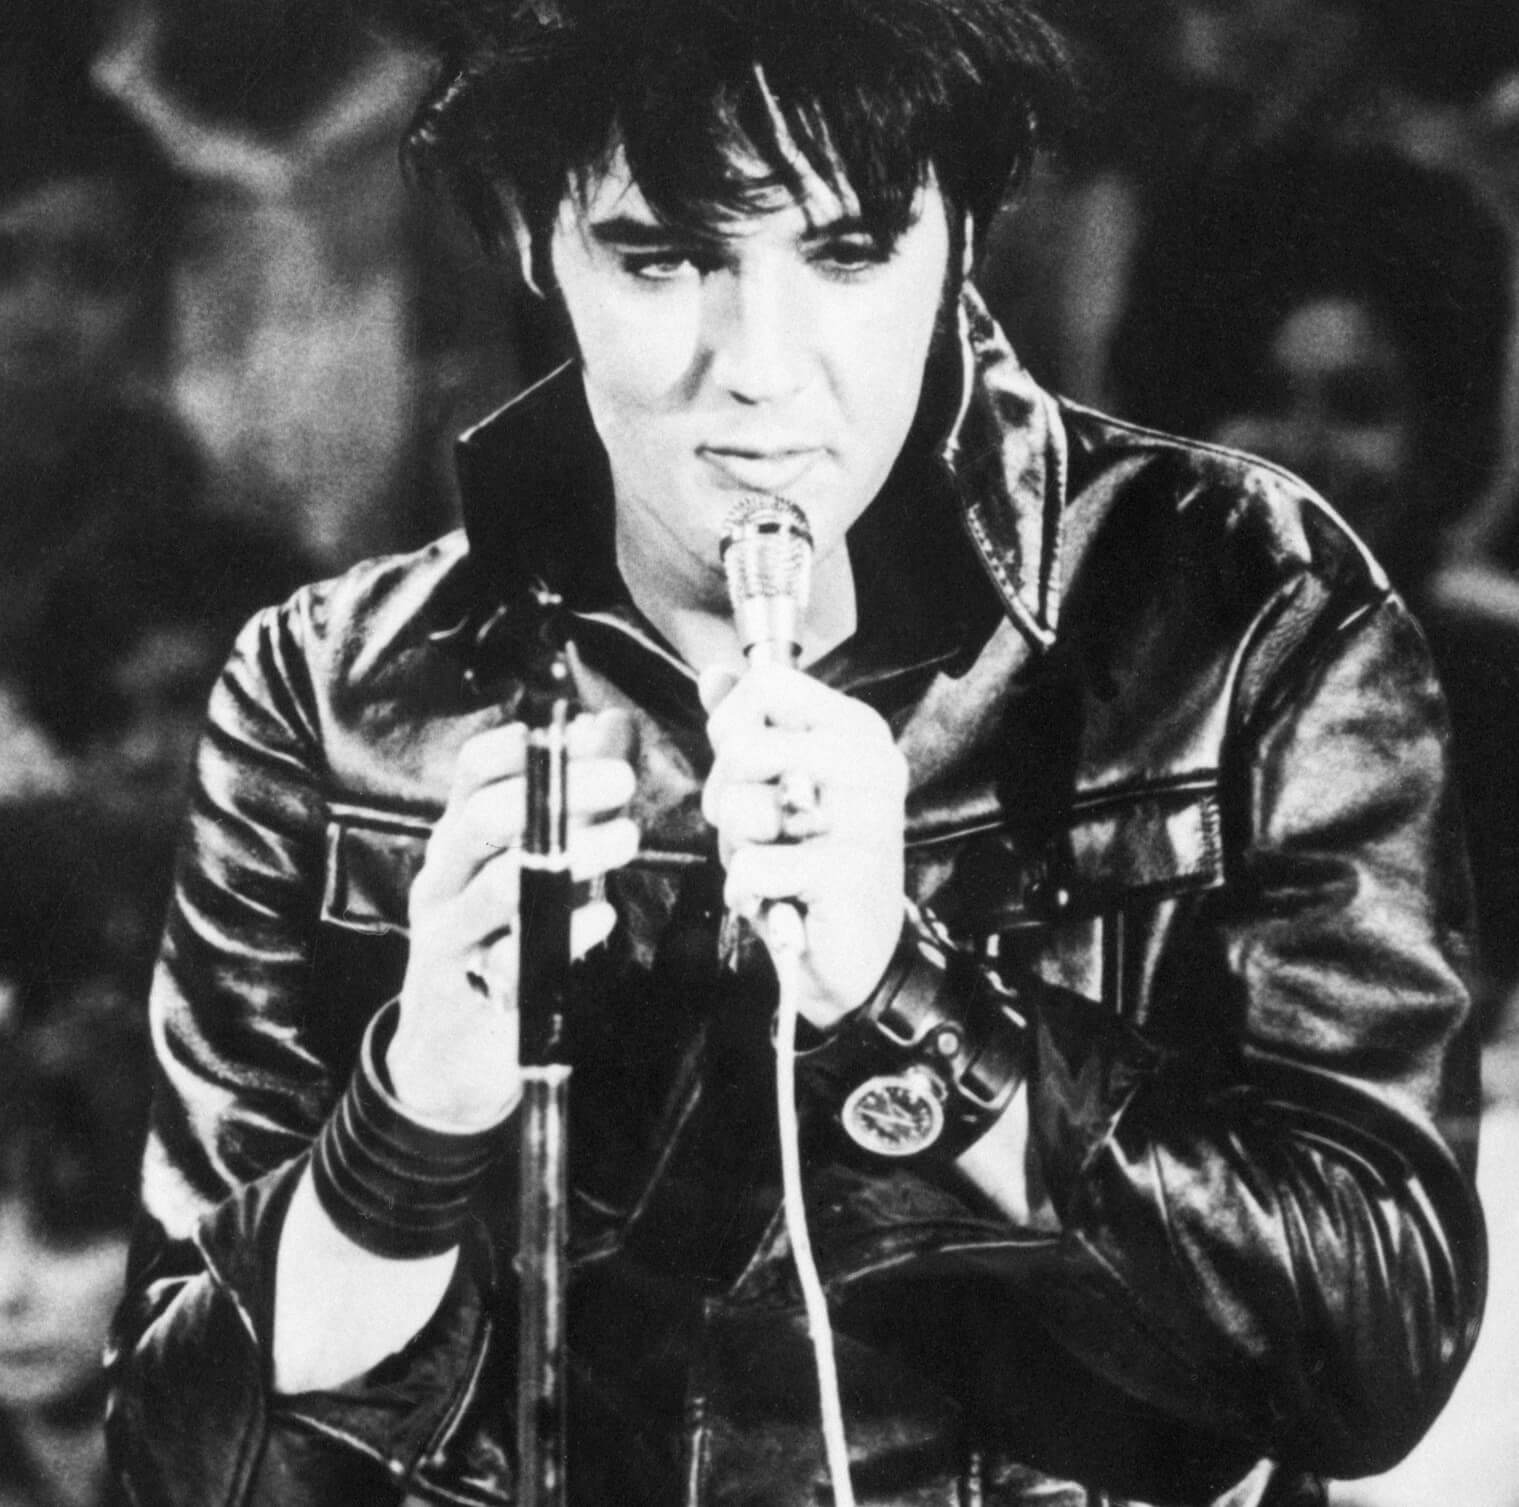 Elvis Presley wearing leather